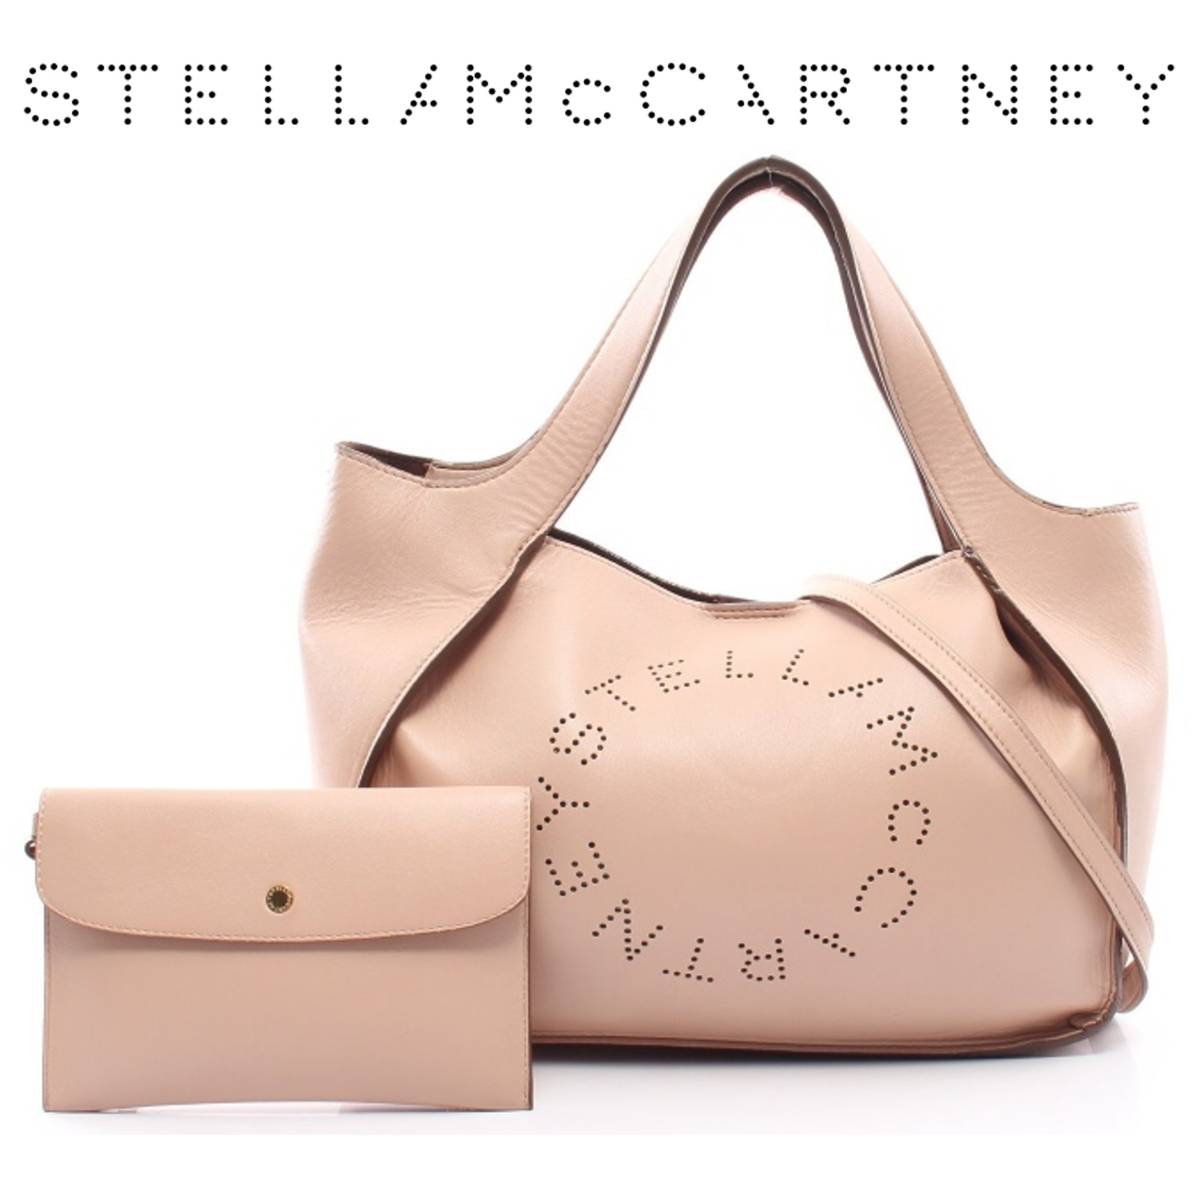 ステラ・マッカートニー(Stella McCartney)の新品・未使用品・中古品 